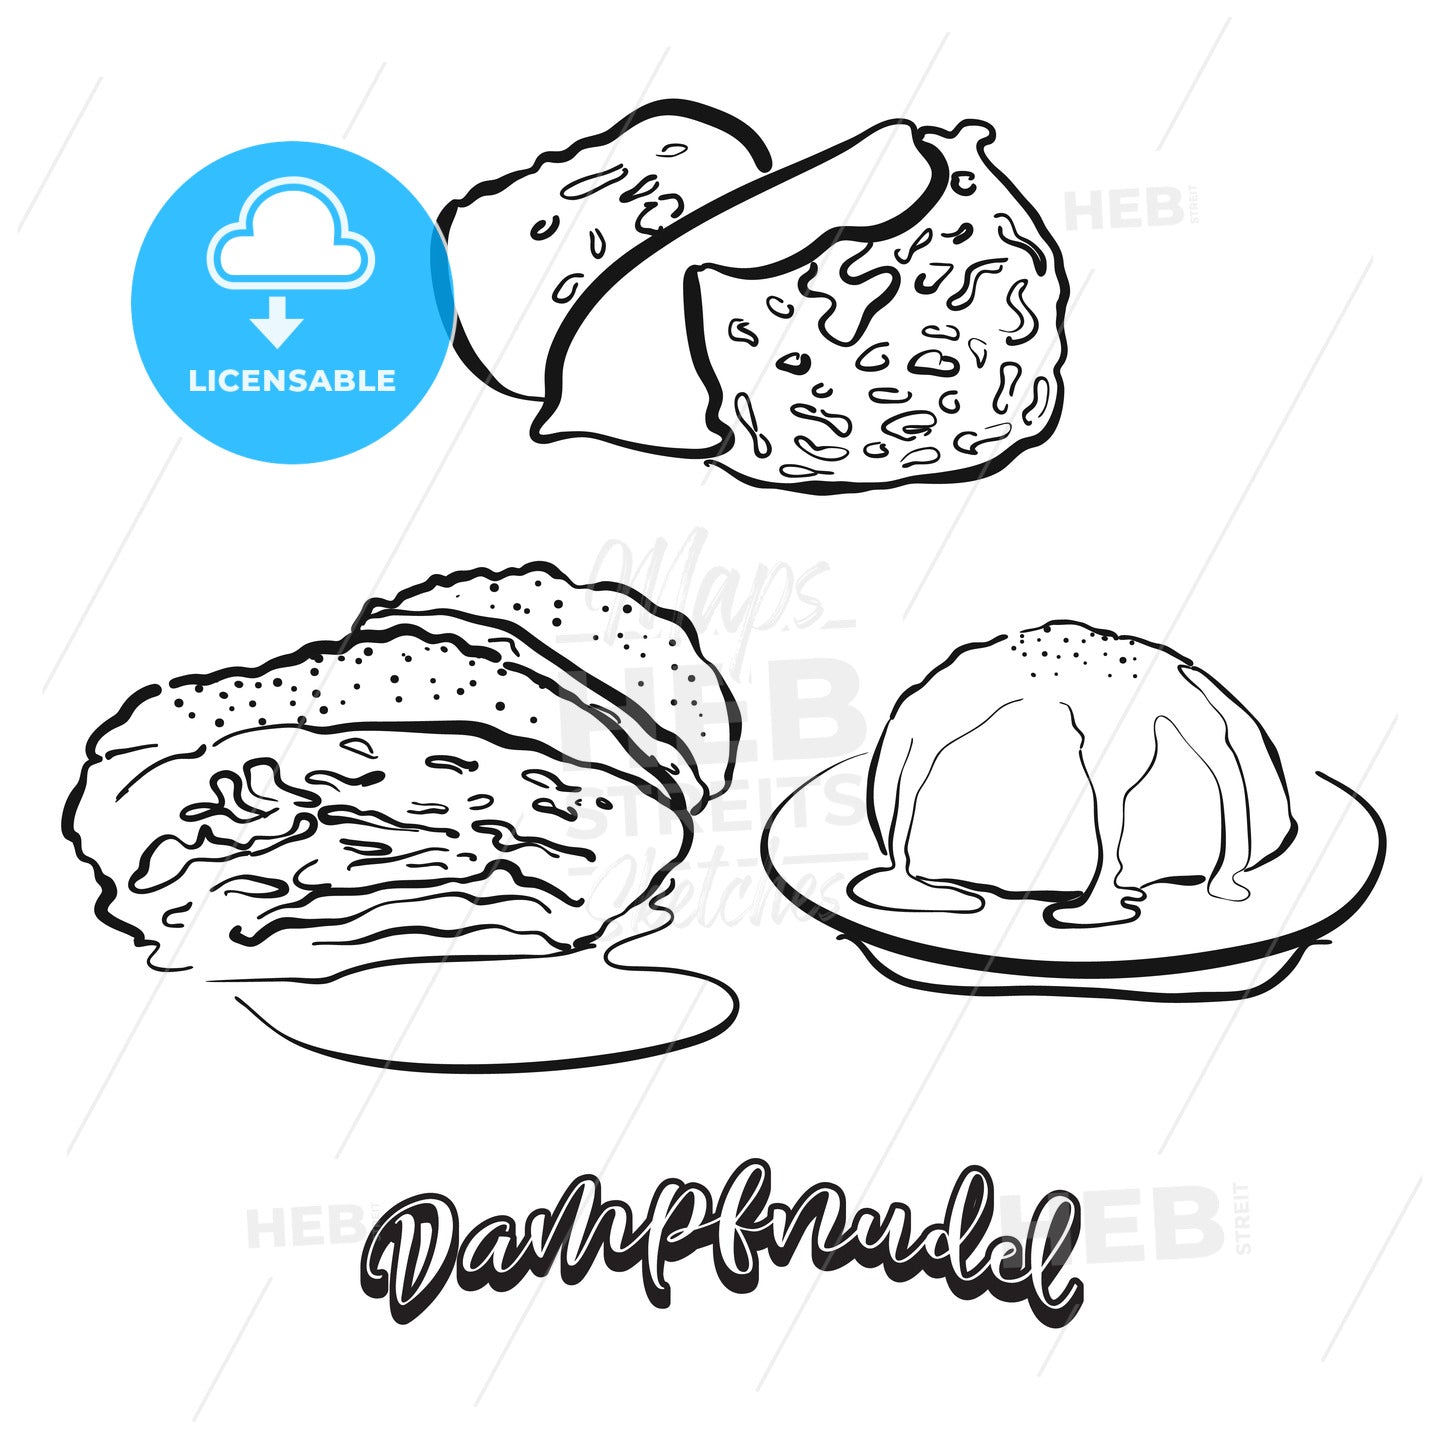 Dampfnudel food sketch on chalkboard – instant download